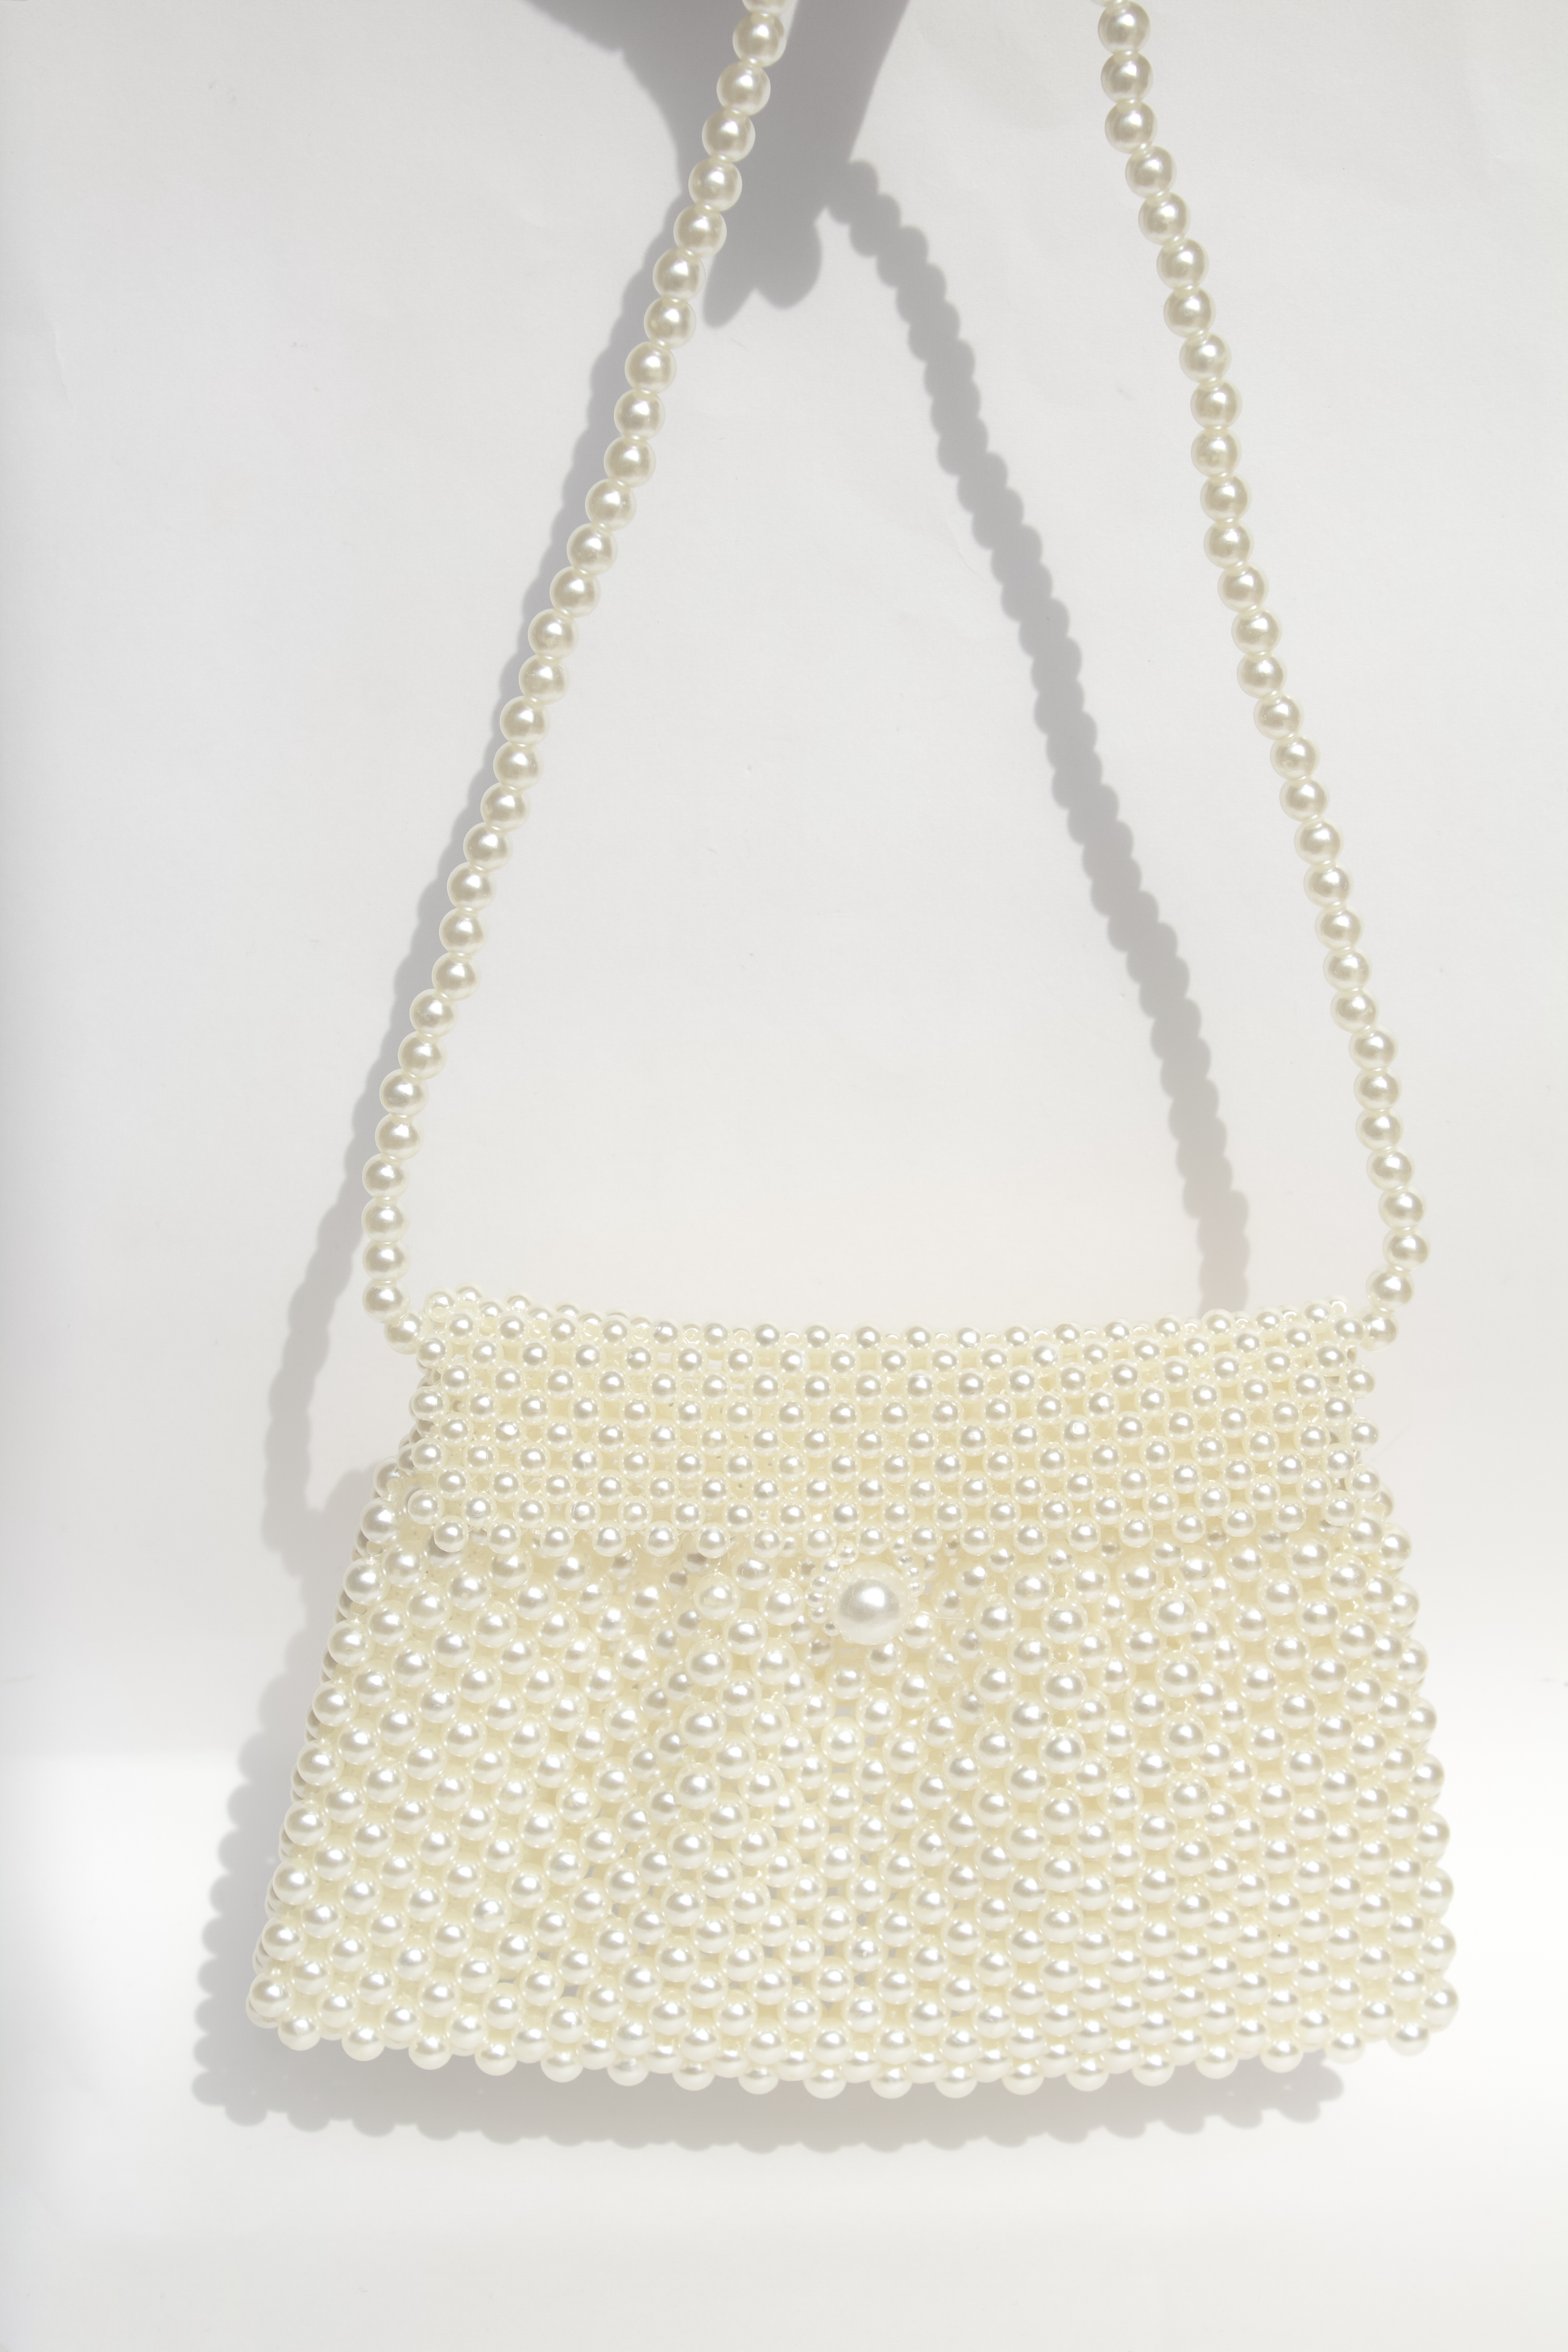 Bolsa blanca hecha con perlas